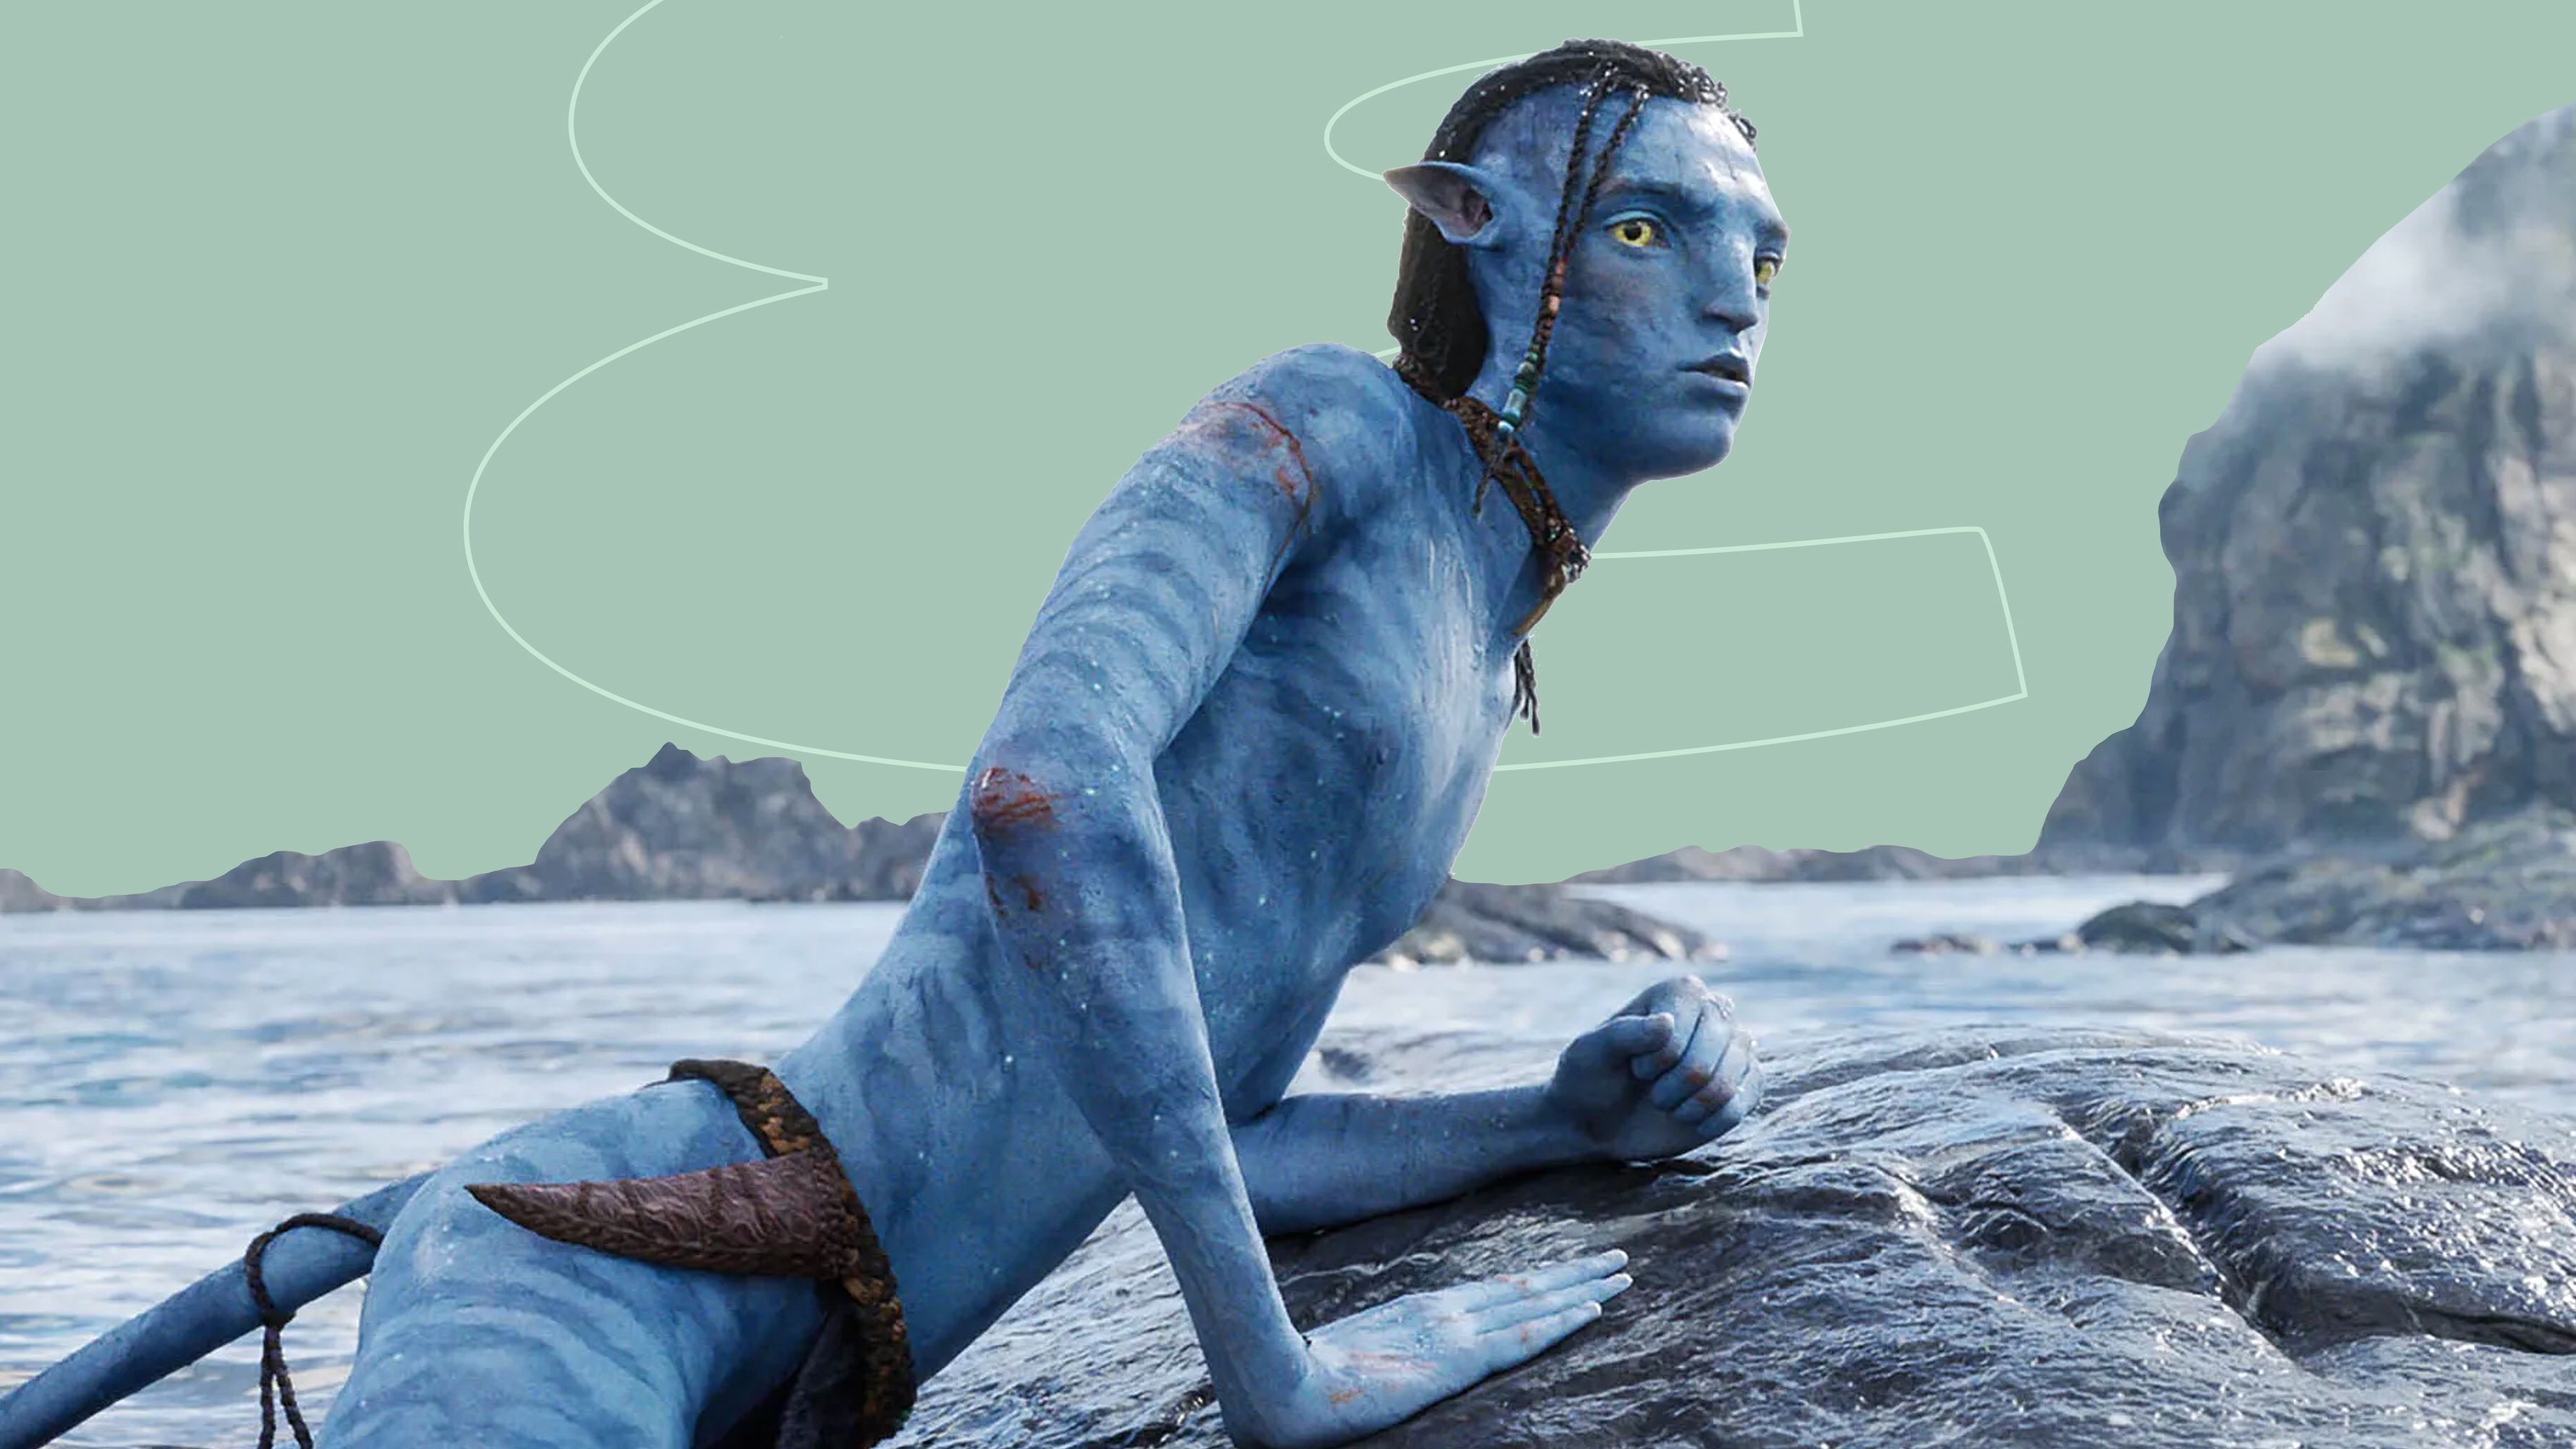 Để xem Avatar: The Way of Water bạn có thể lựa chọn các cách khác nhau như mua vé xem trực tiếp tại rạp hoặc xem qua các nền tảng trực tuyến. Hãy cùng khám phá và tận hưởng những cảnh quay tuyệt đẹp và hấp dẫn trong phim Avatar: The Way of Water.